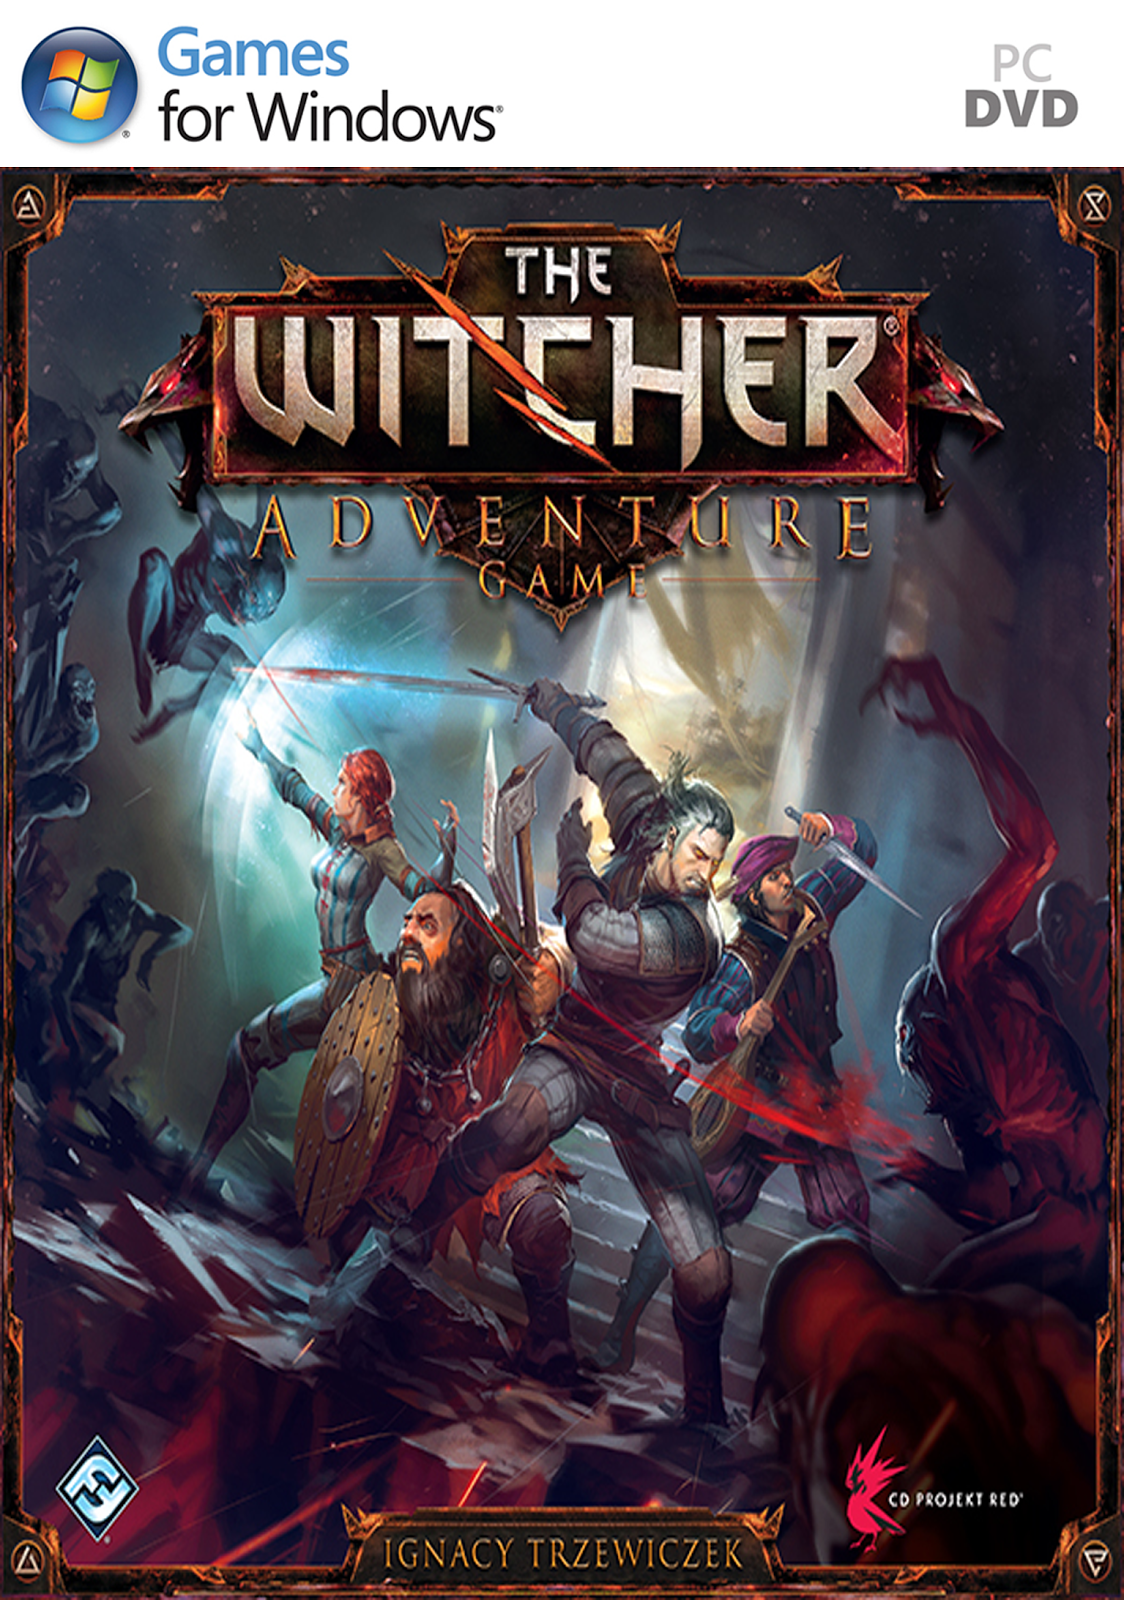 jaquette du jeu vidéo The Witcher Adventure Game